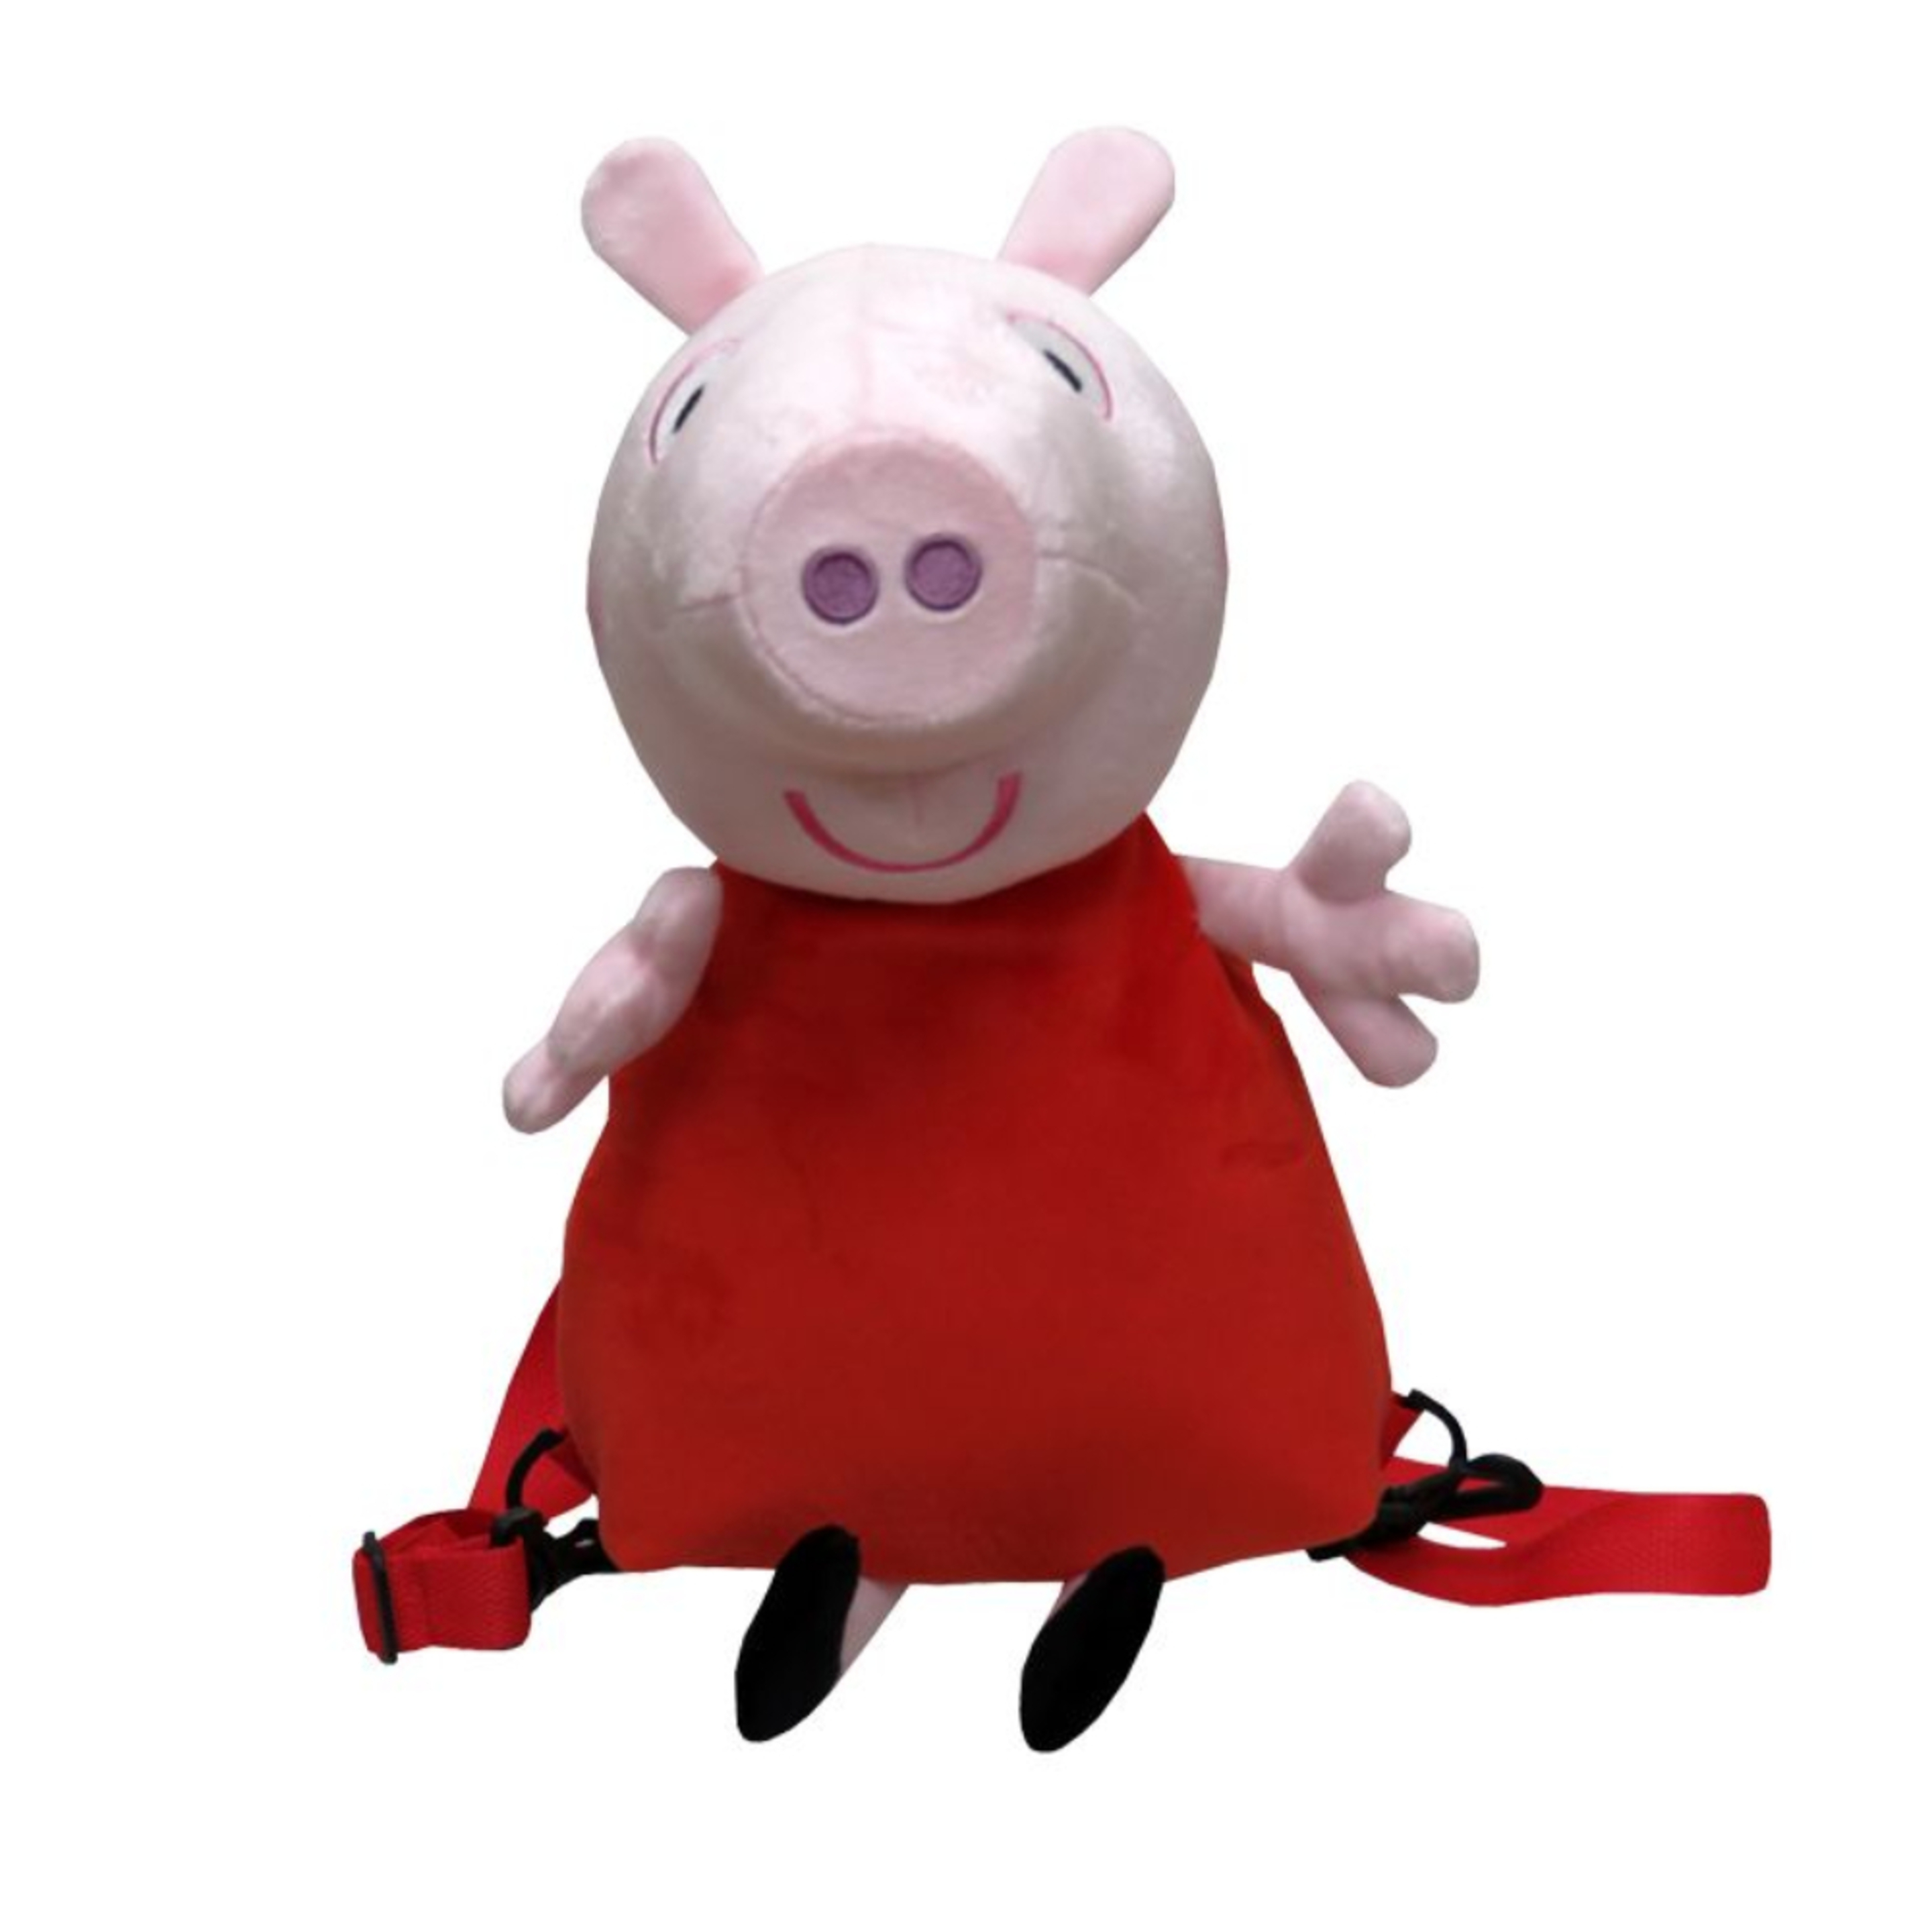 Mochila Peppa Pig 60201 - rosa - 